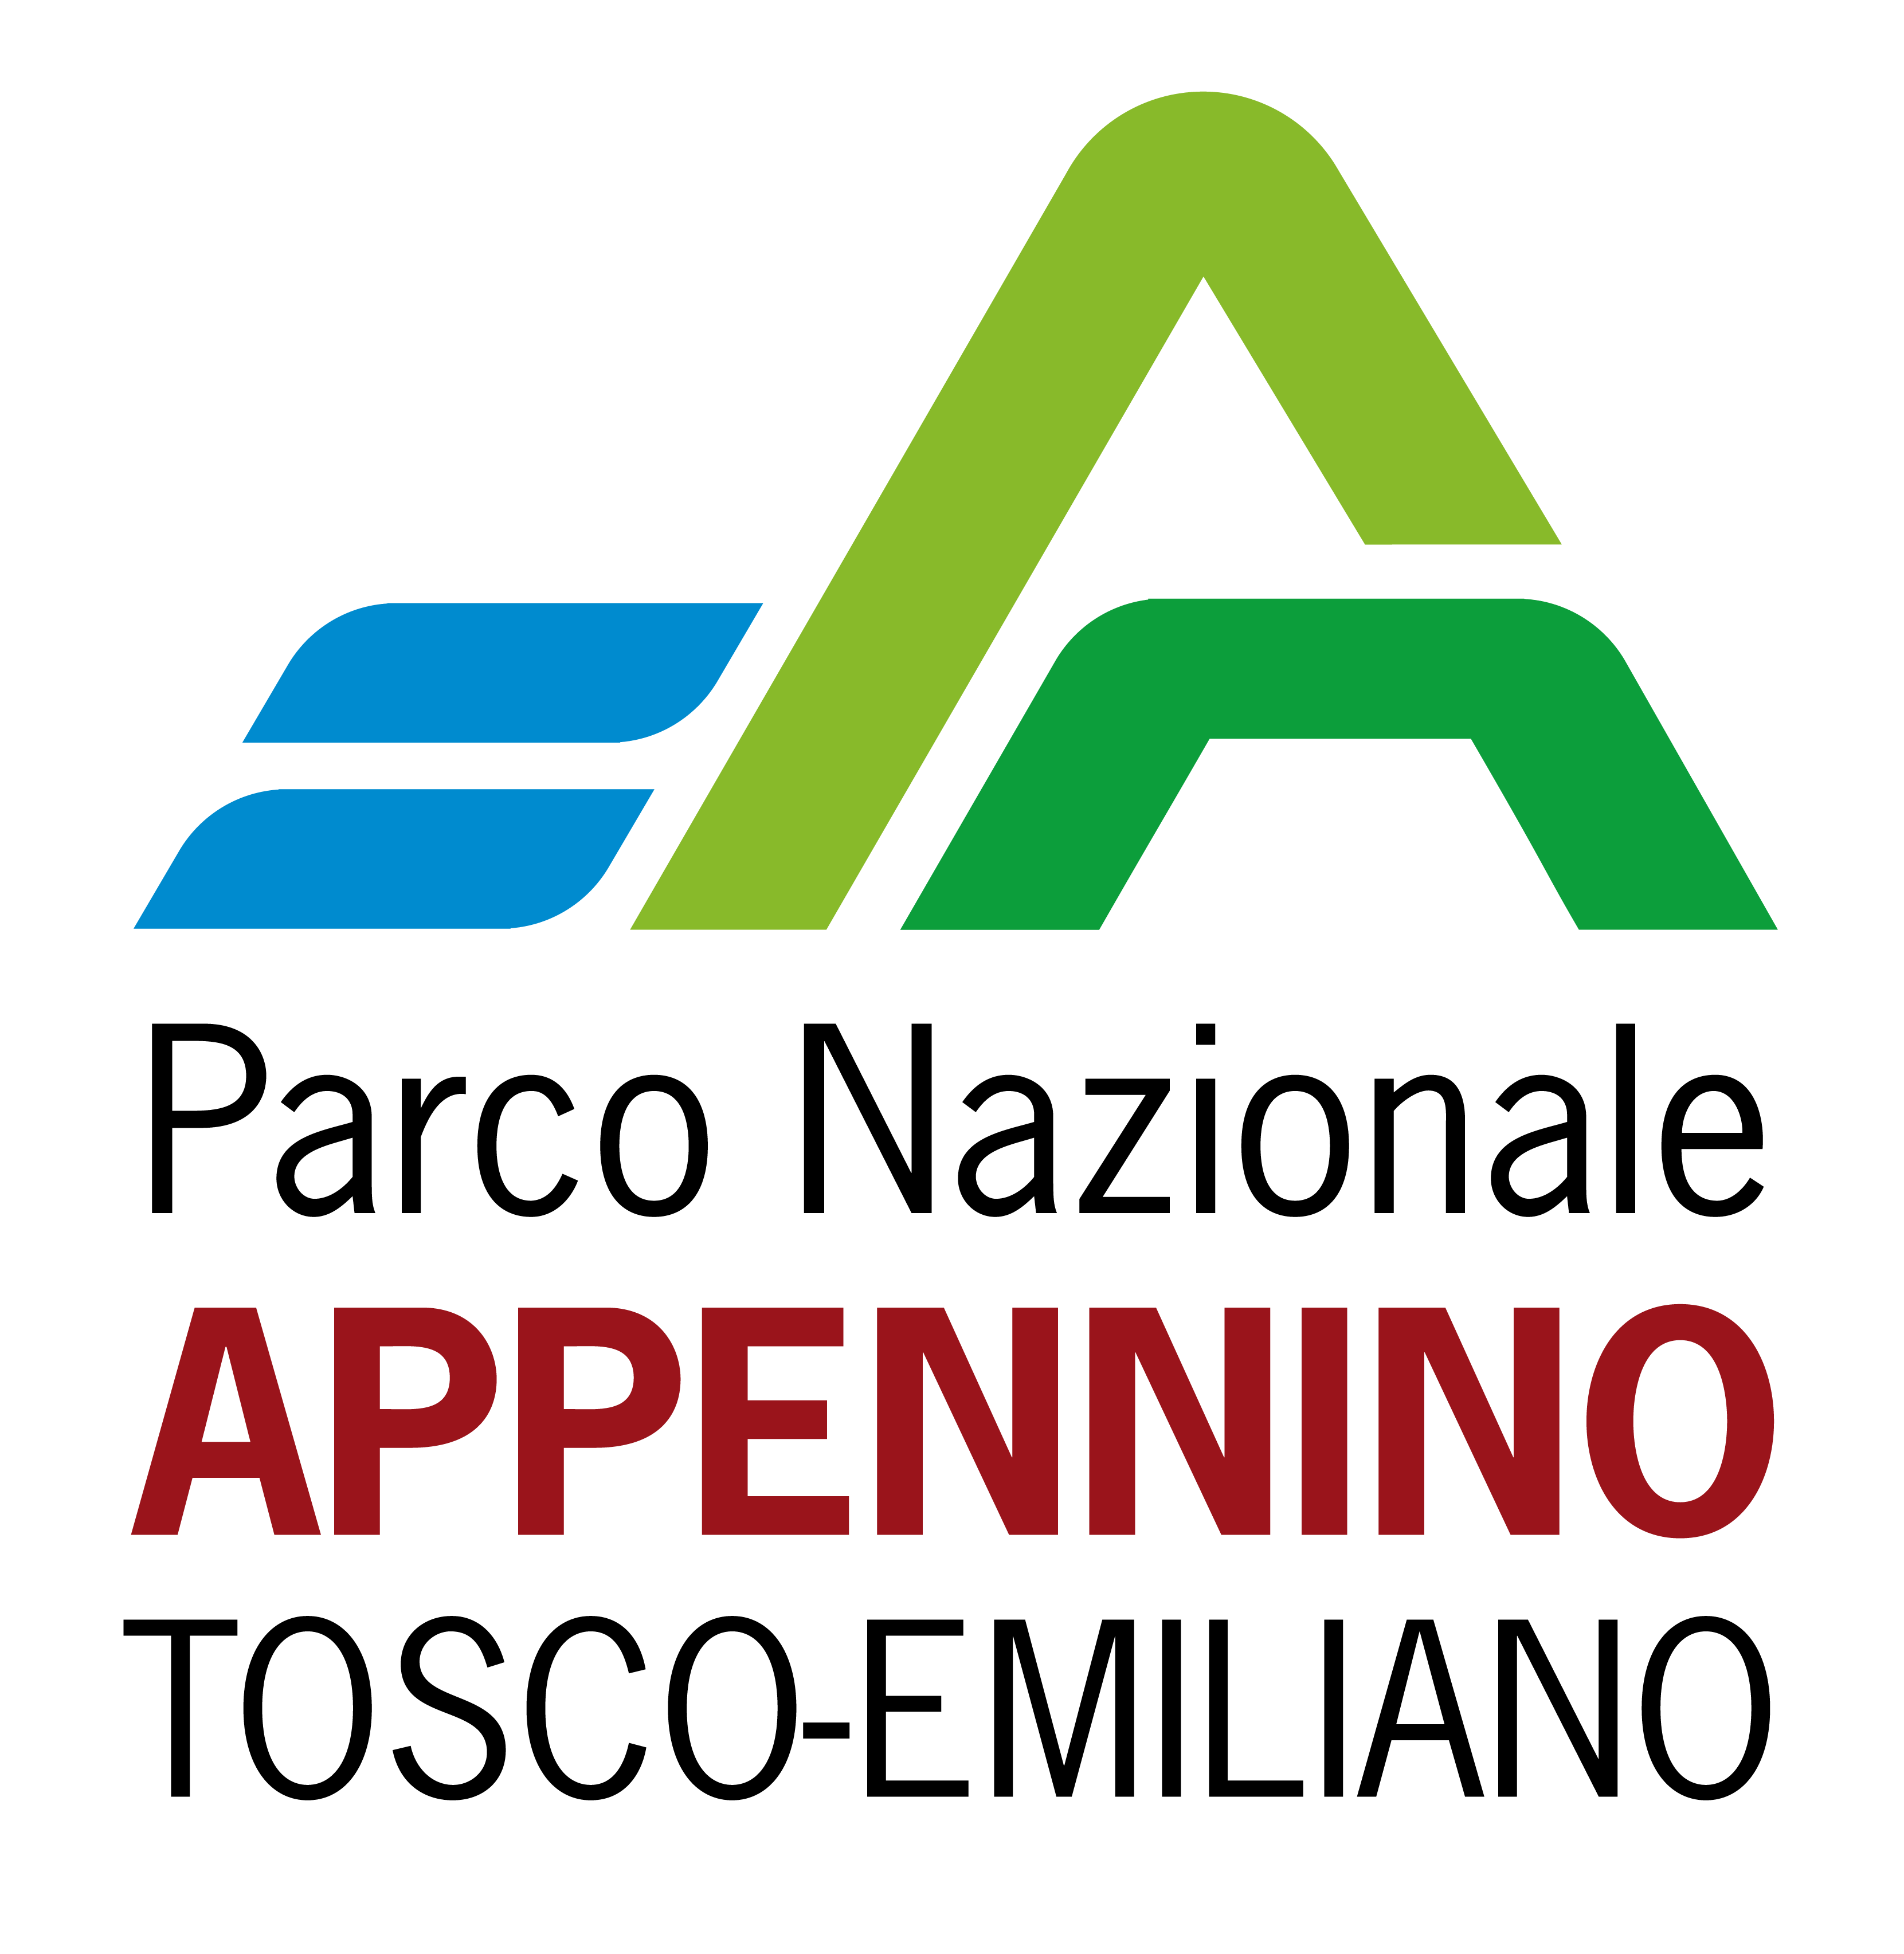 Parco Nazionale Appennino Tosco-Emiliano